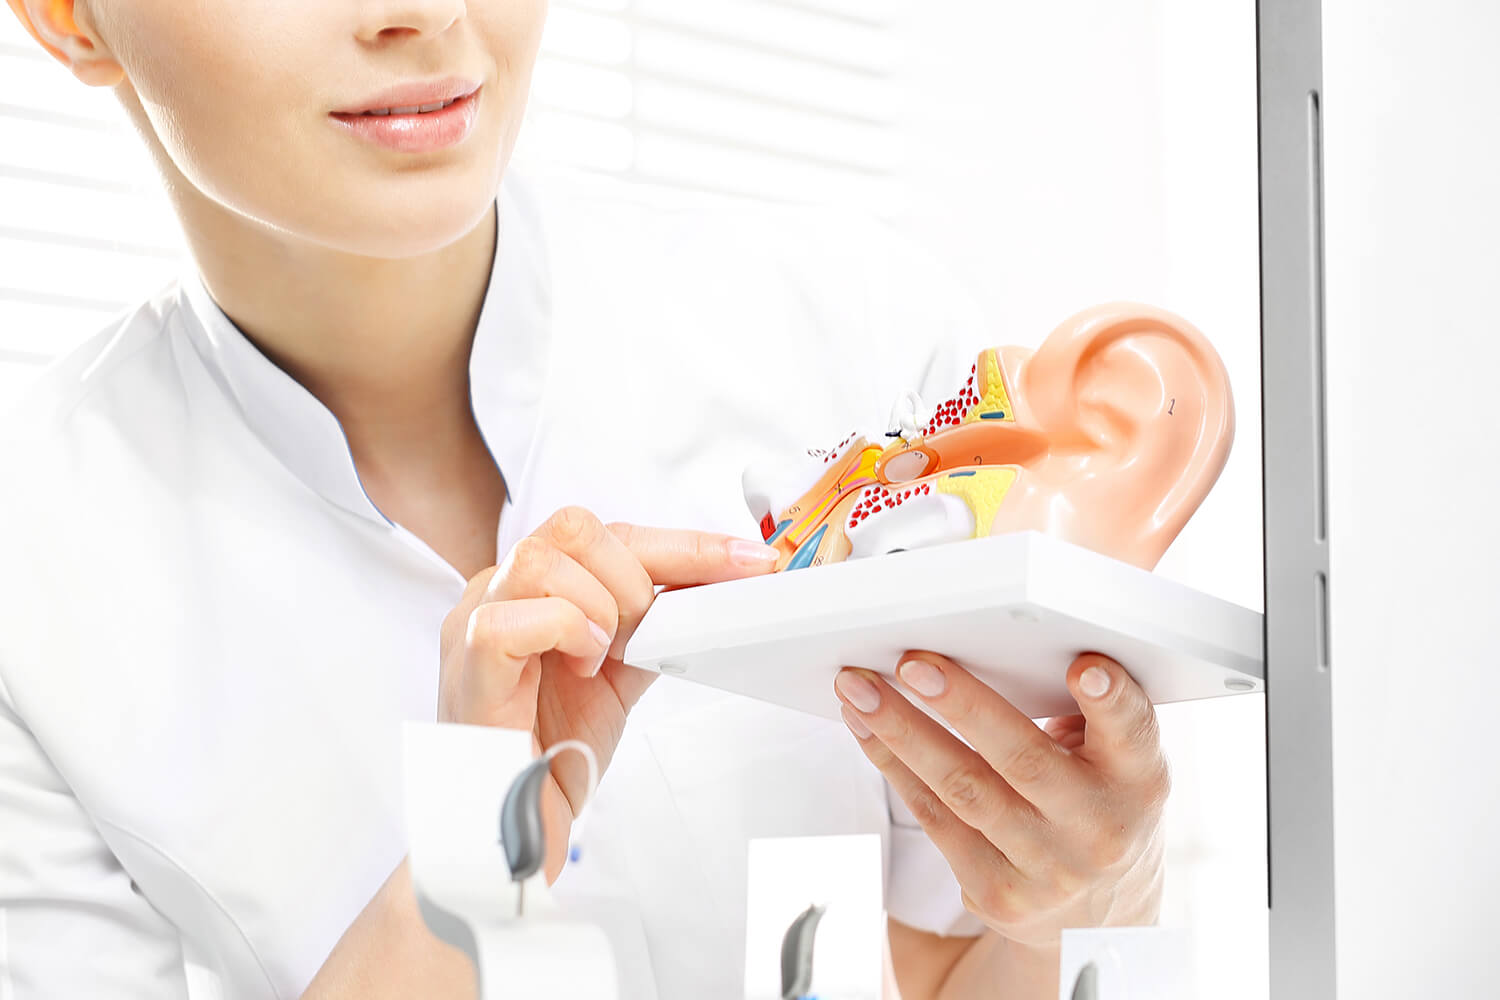 Model of inner ear for hearing test